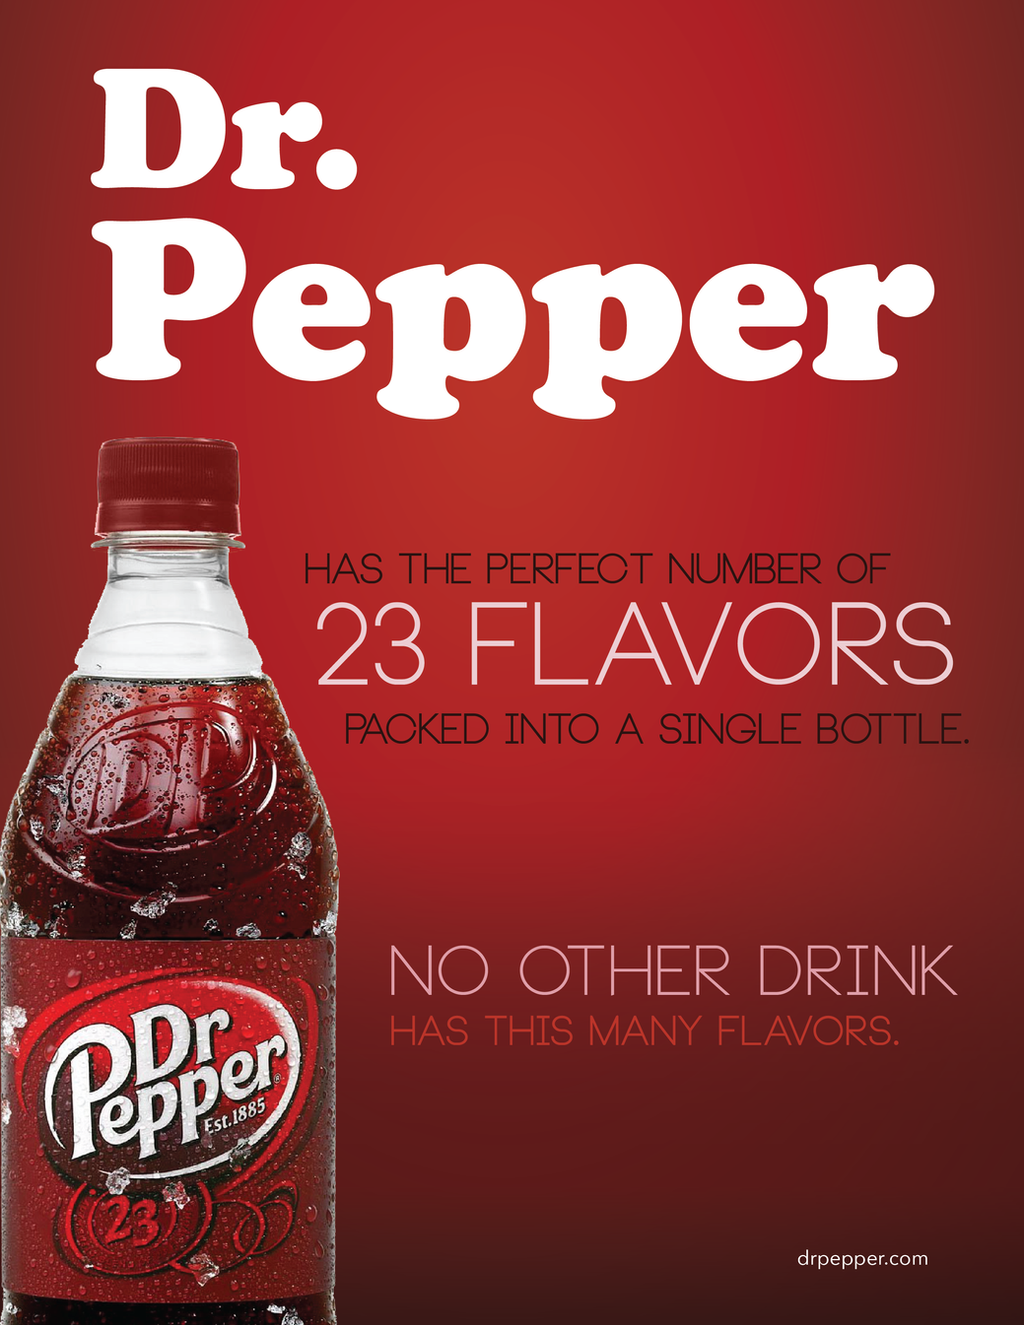 Dr Pepper Ad by BilltJoe on DeviantArt